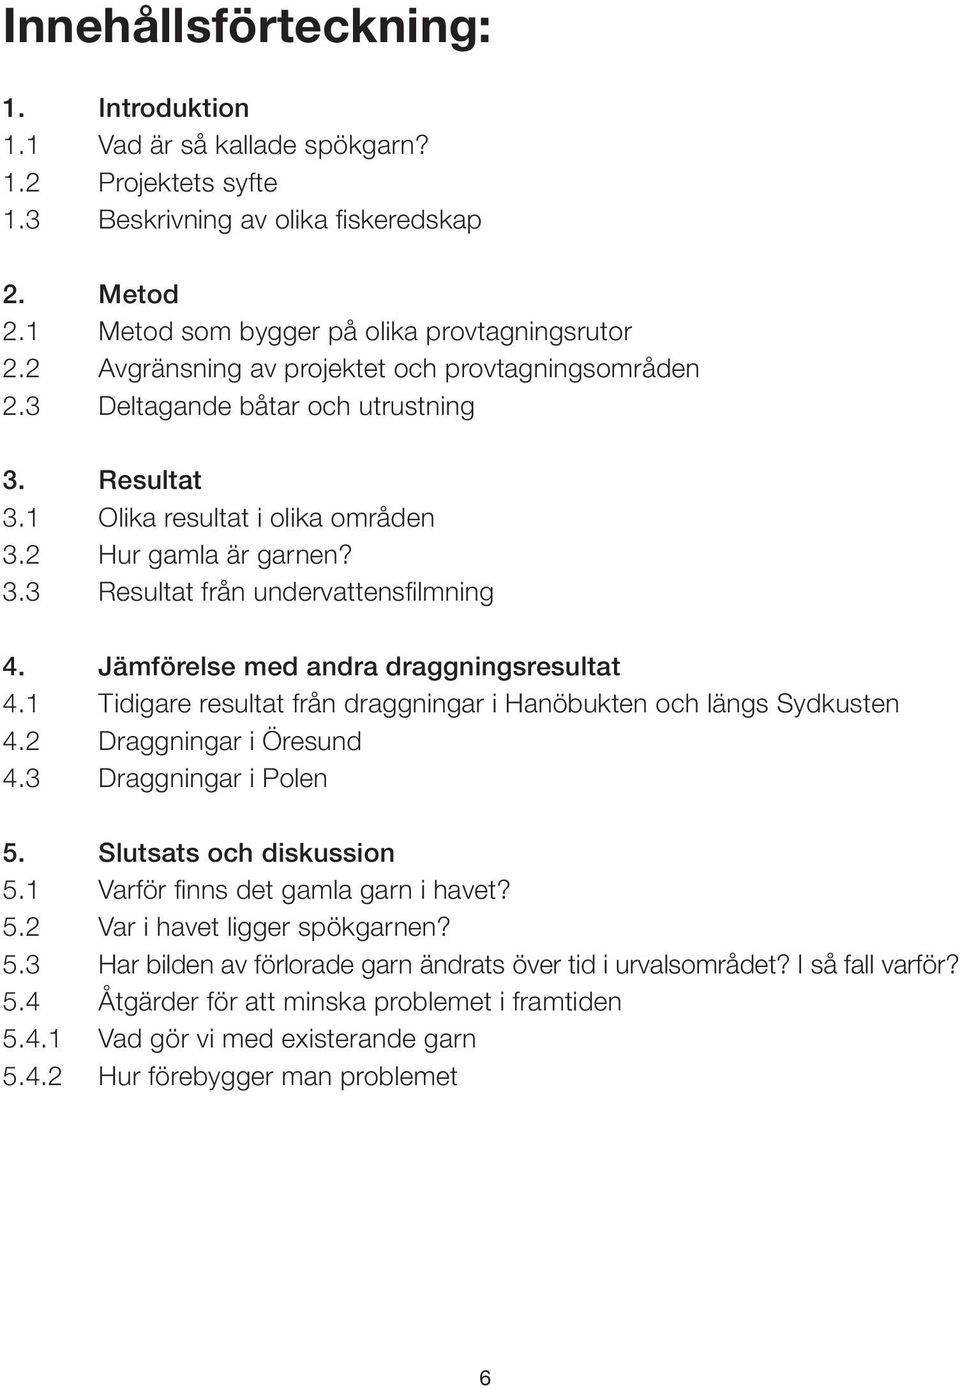 Jämförelse med andra draggningsresultat 4.1 Tidigare resultat från draggningar i Hanöbukten och längs Sydkusten 4.2 Draggningar i Öresund 4.3 Draggningar i Polen 5. Slutsats och diskussion 5.